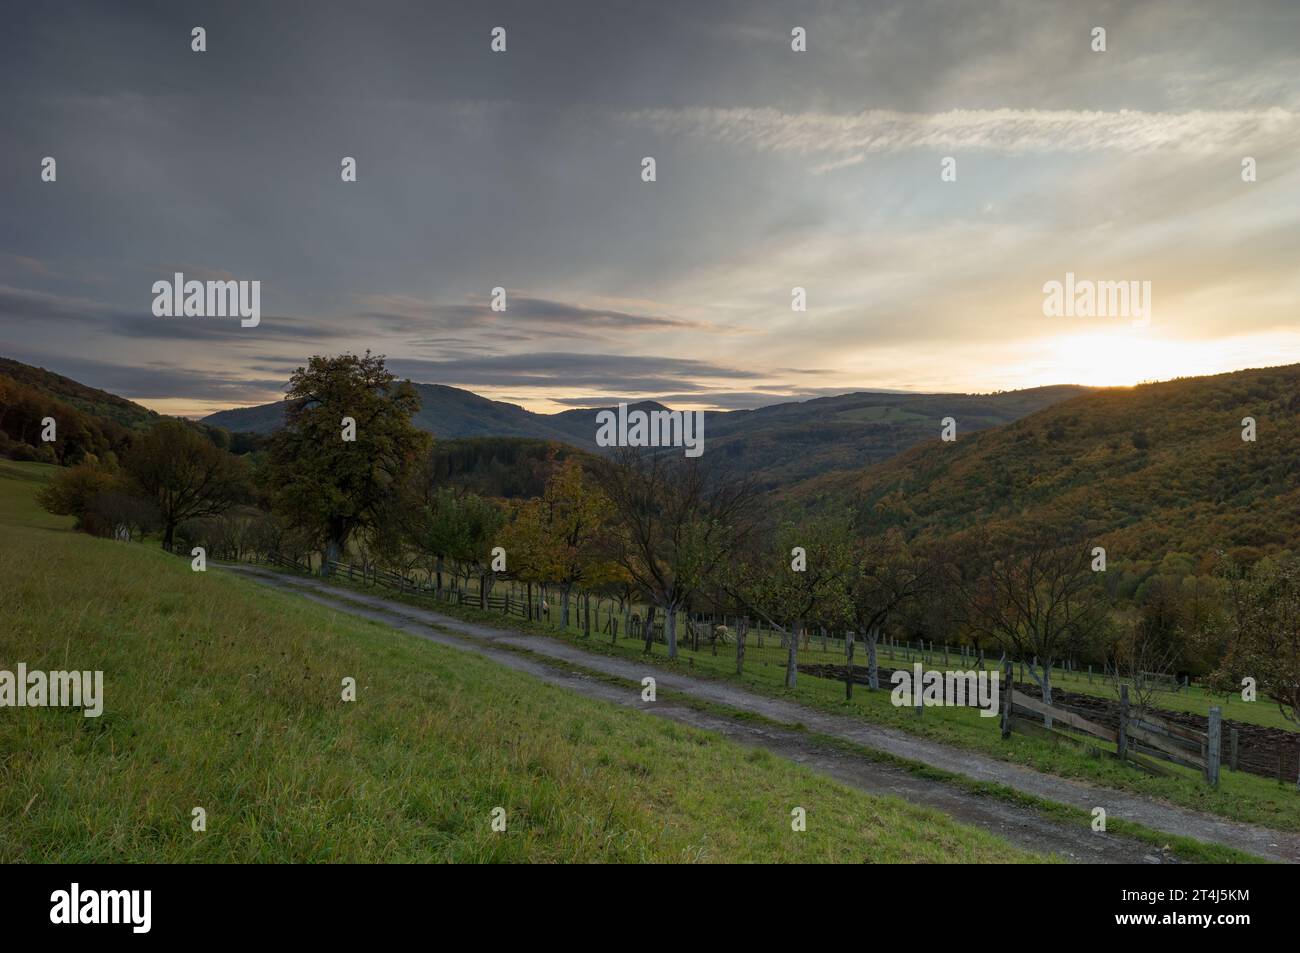 Herbstliche ländliche Landschaft mit Weg, Zaun und Bäumen. Wald und Berge im Hintergrund. Wunderschöner farbenfroher Himmel bei Sonnenuntergang. Dubrava, Slowakei Stockfoto